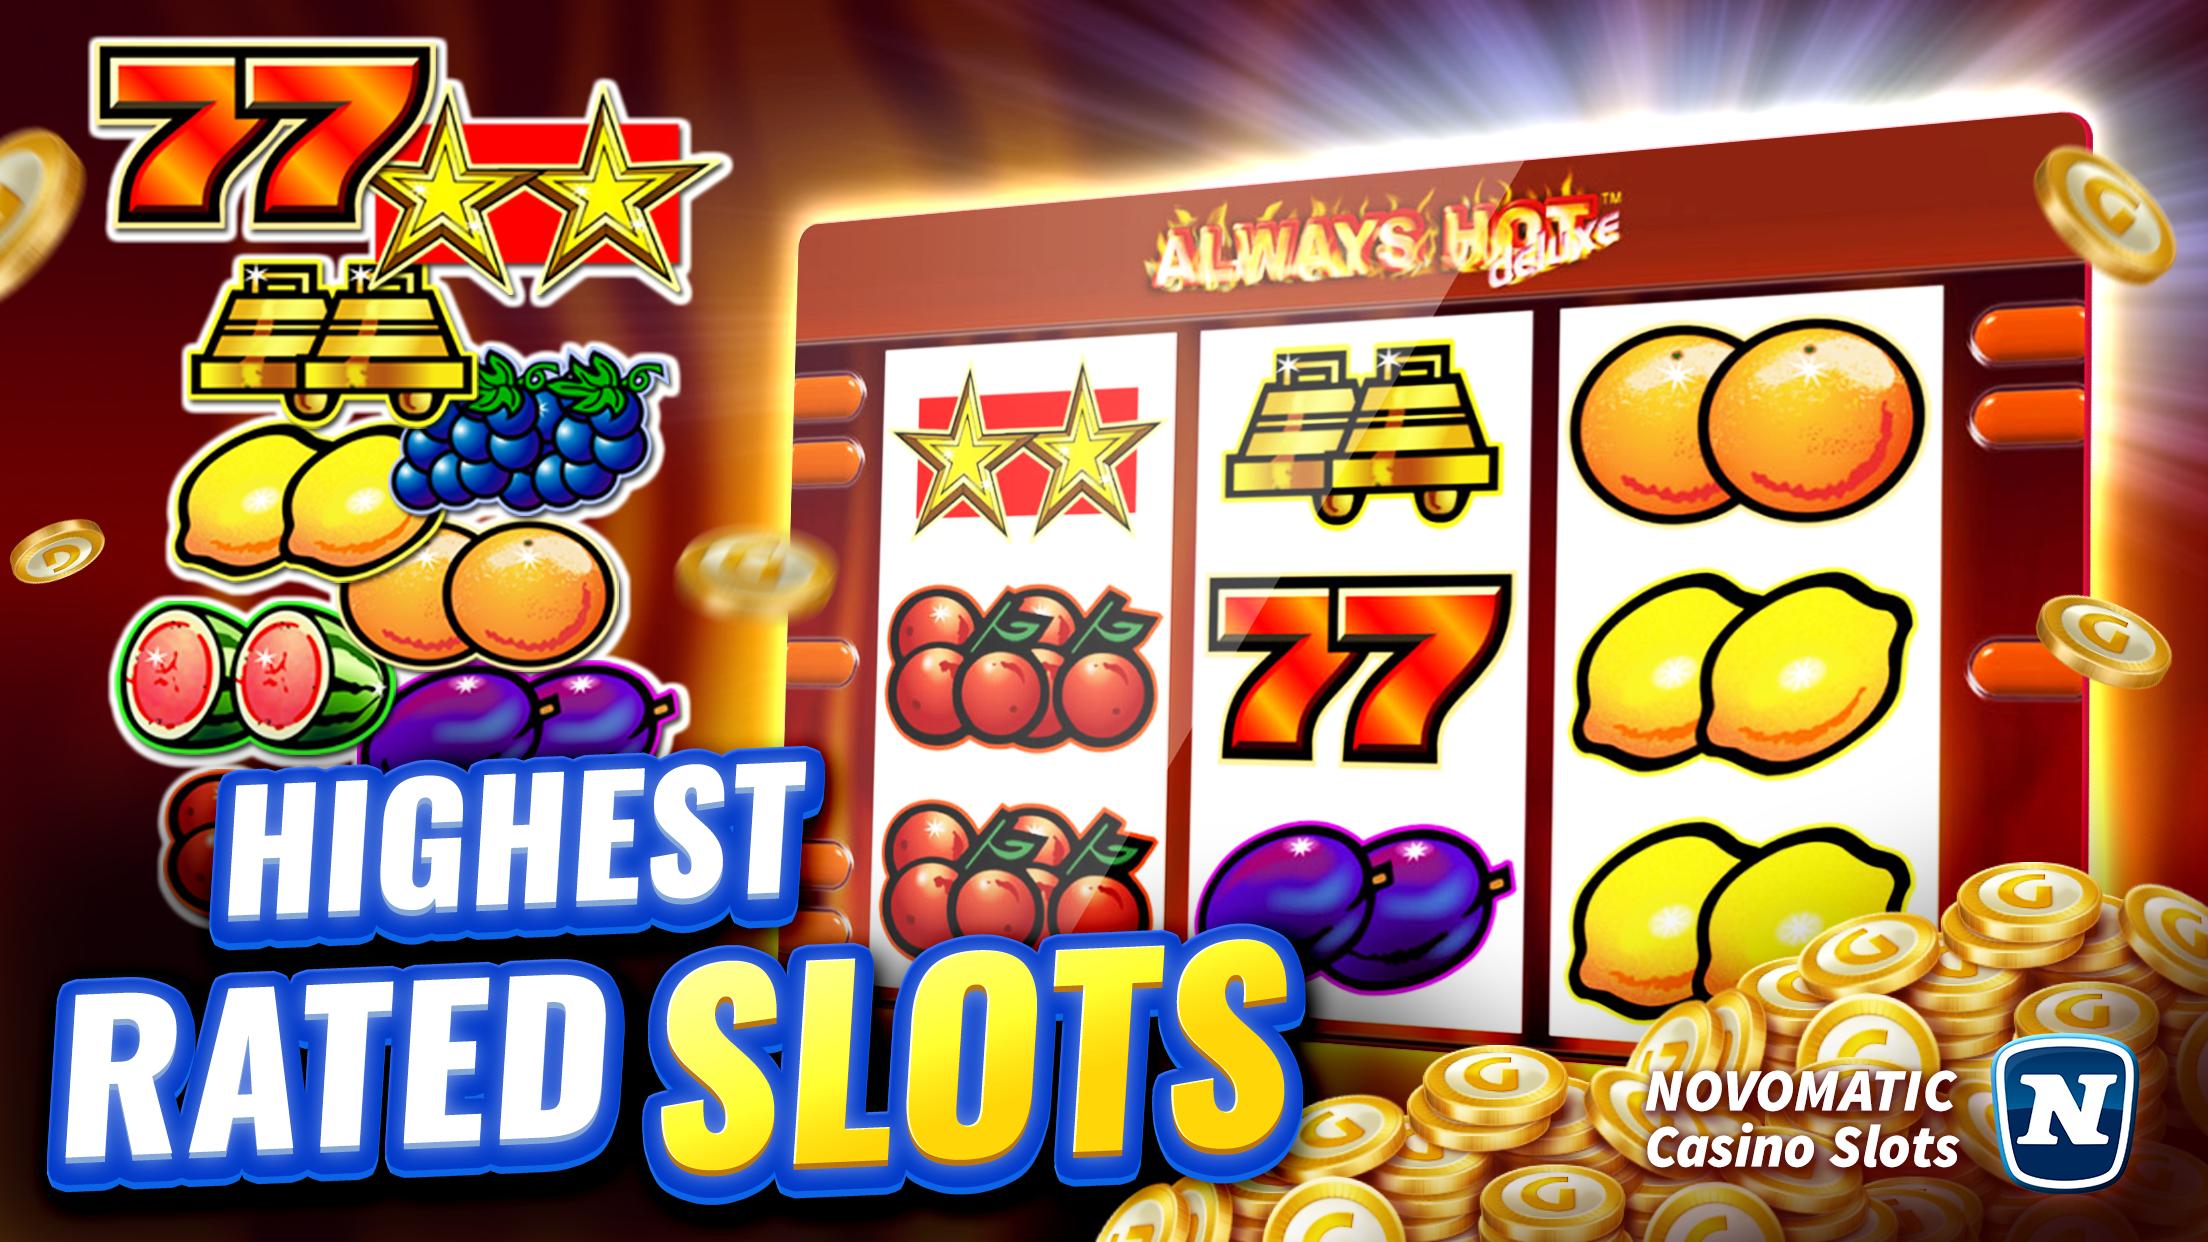 Gaminator Casino Slots - Play Slot Machines 777 3.21.1 Screenshot 3